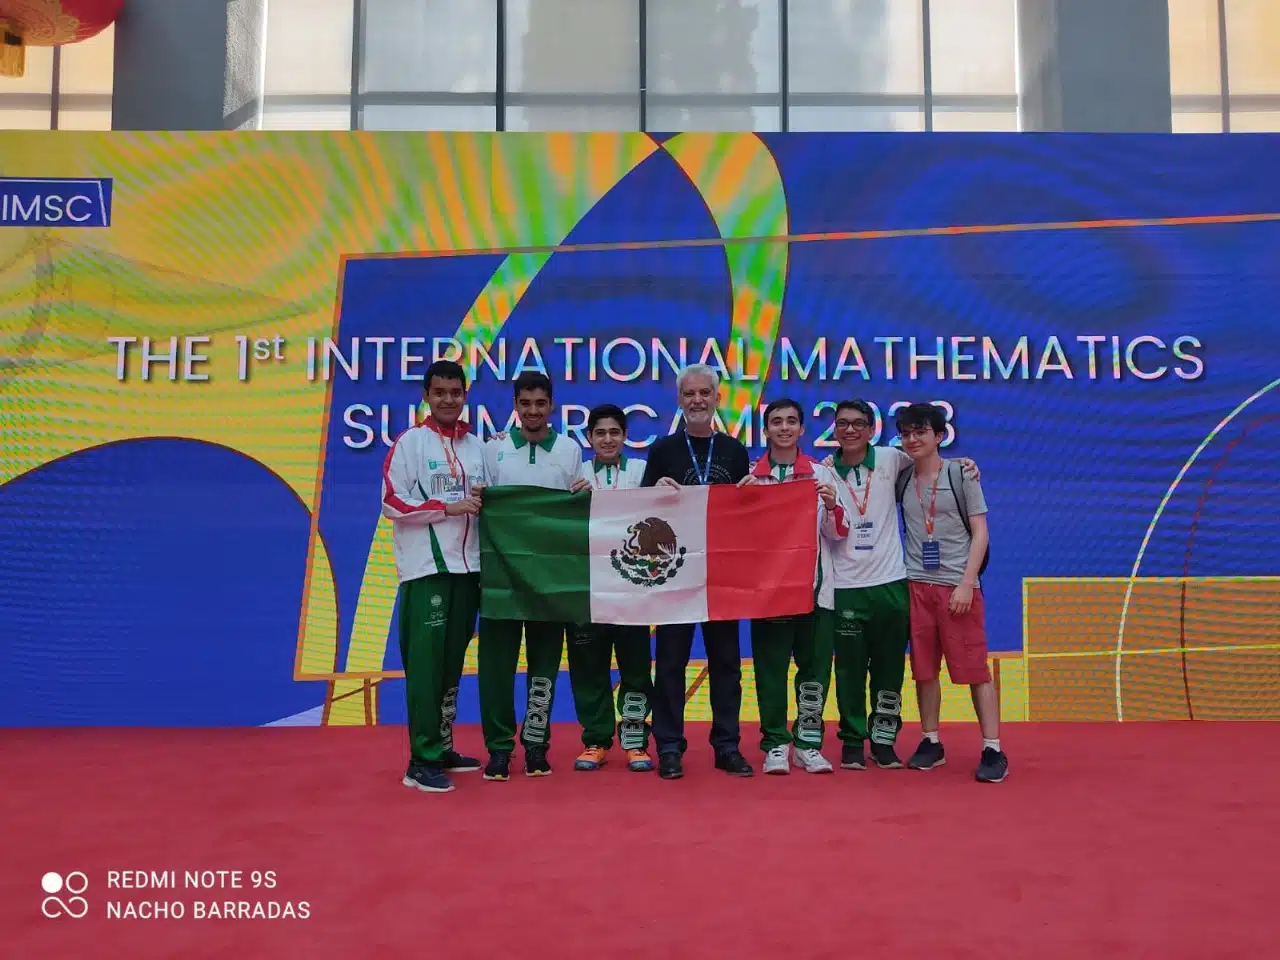 estudiantes coon la bandera de México